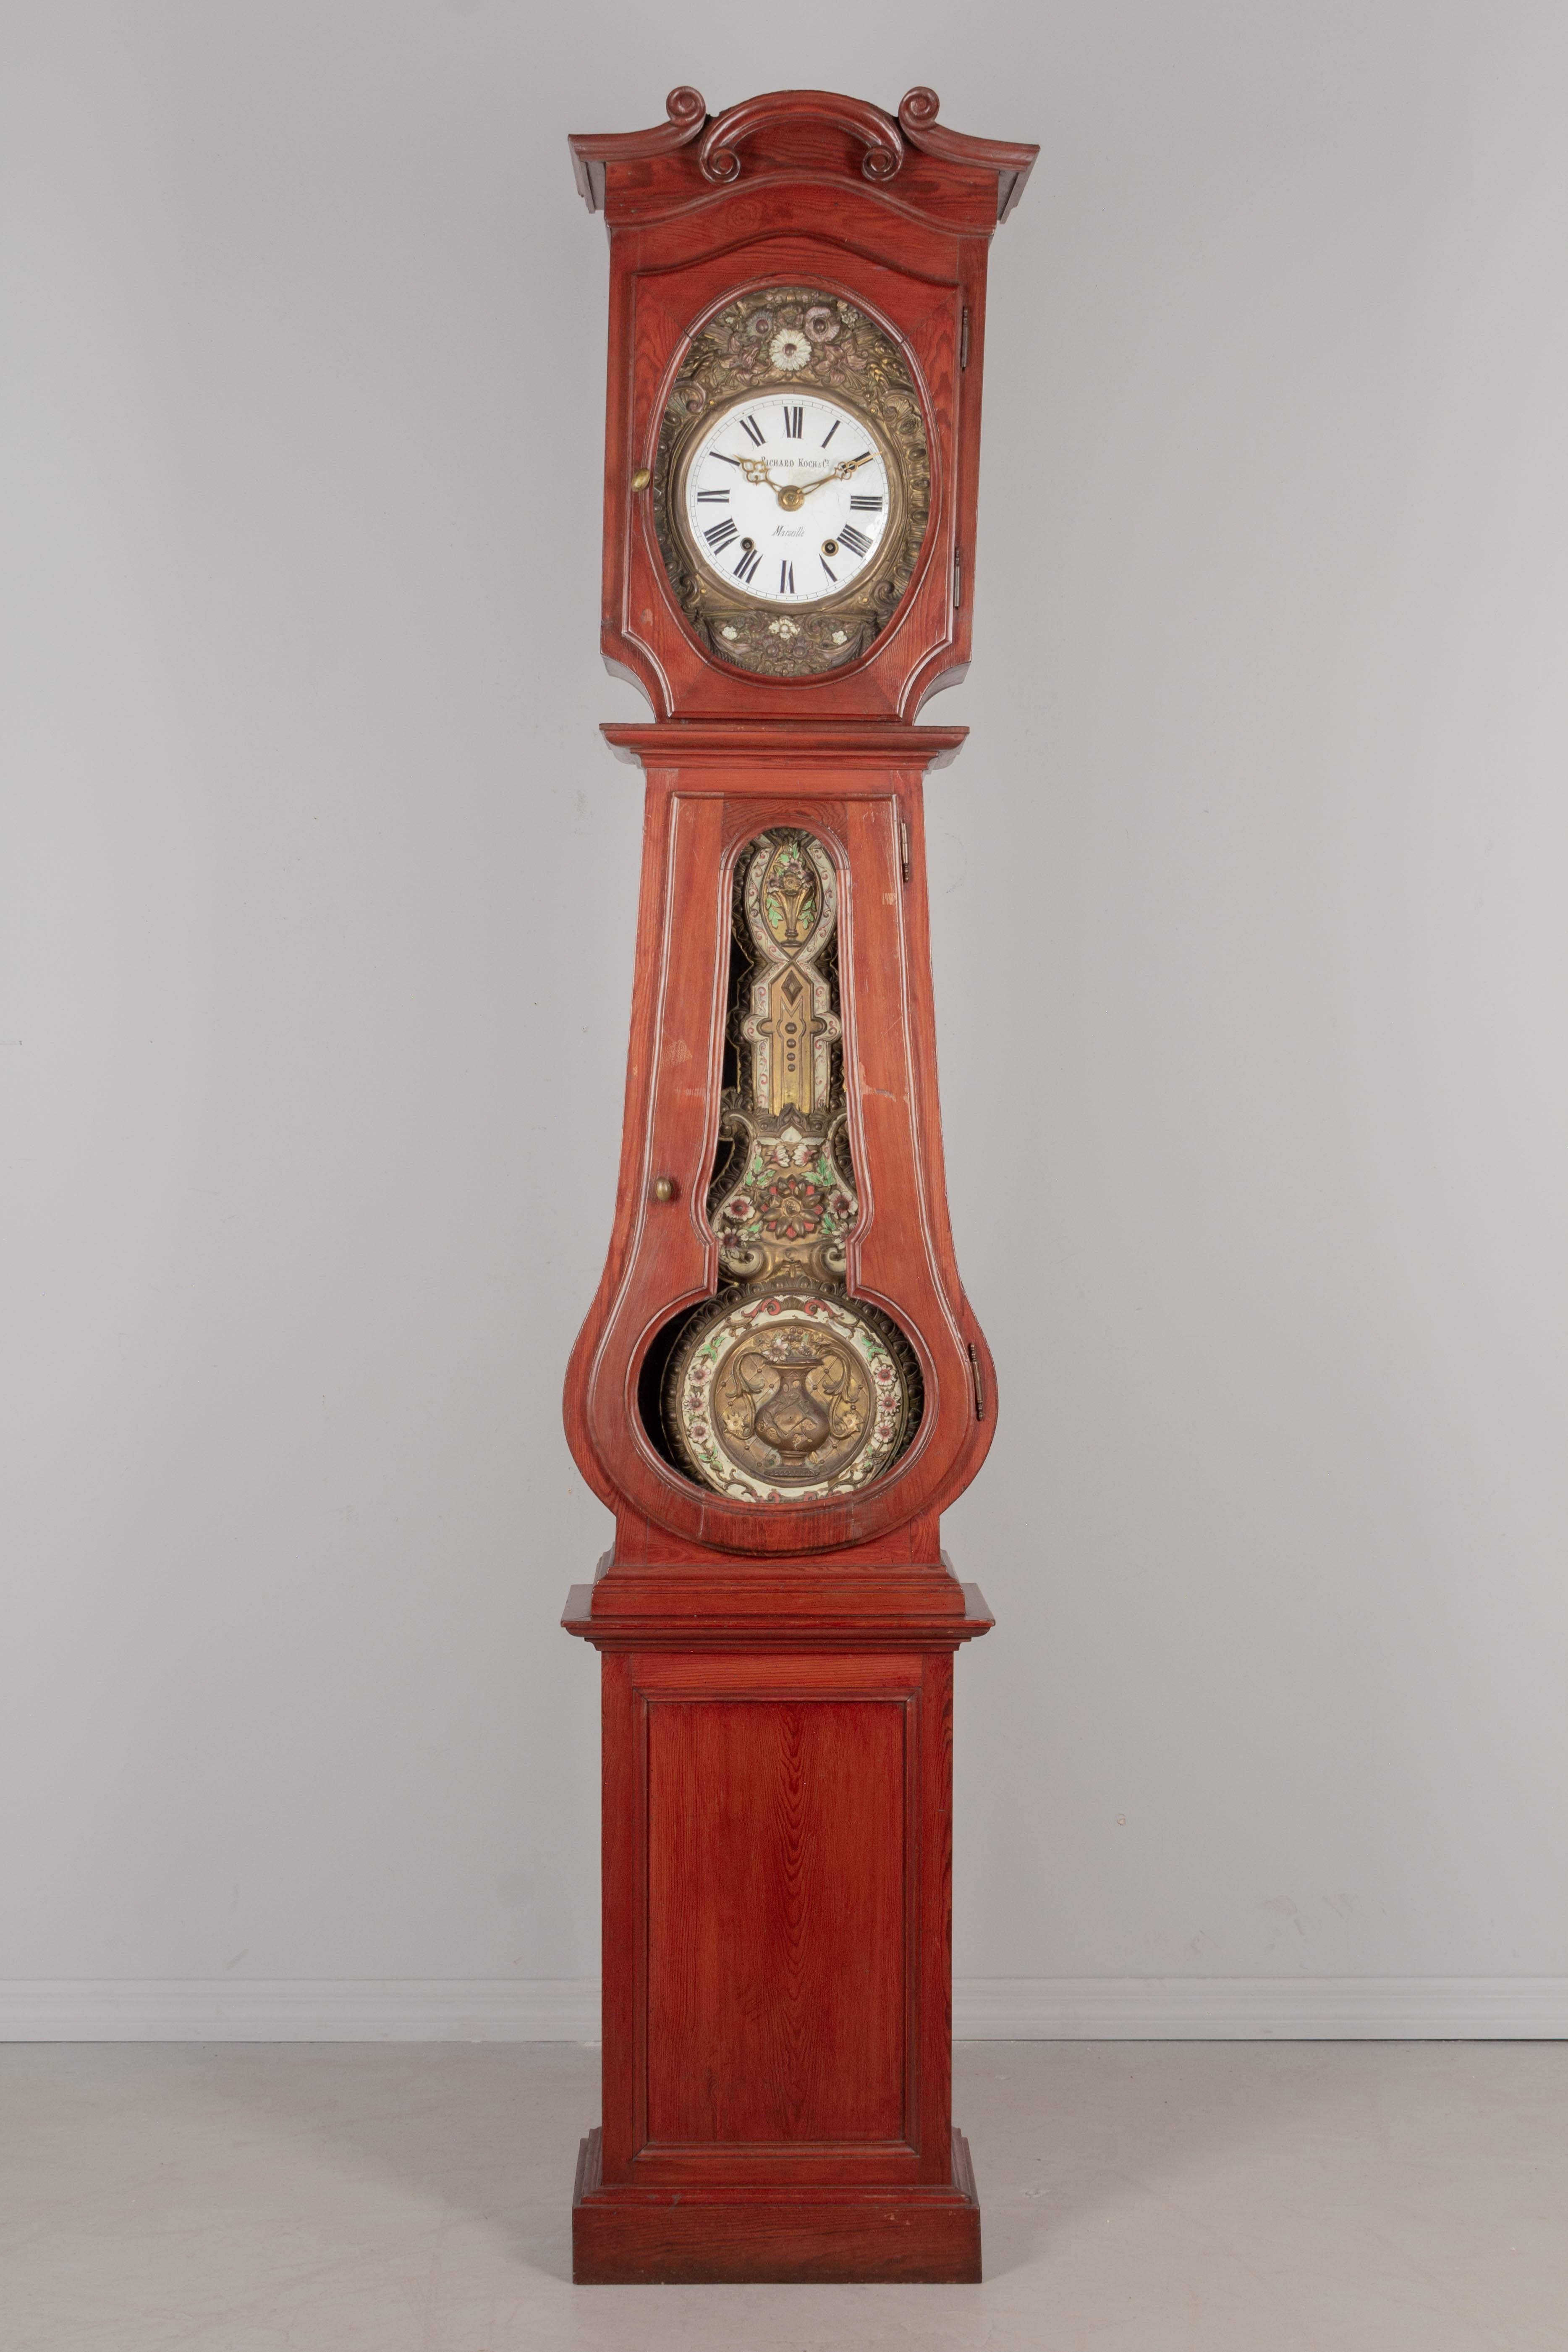 Une comtoise ou horloge de grand-père française du XIXe siècle, avec un boîtier en pin et un pendule en laiton gaufré. Le boîtier provient de Normandie vers 1900-1920 et le mouvement de Marseille vers 1880-1900. Le mouvement Morbier à sept jours a